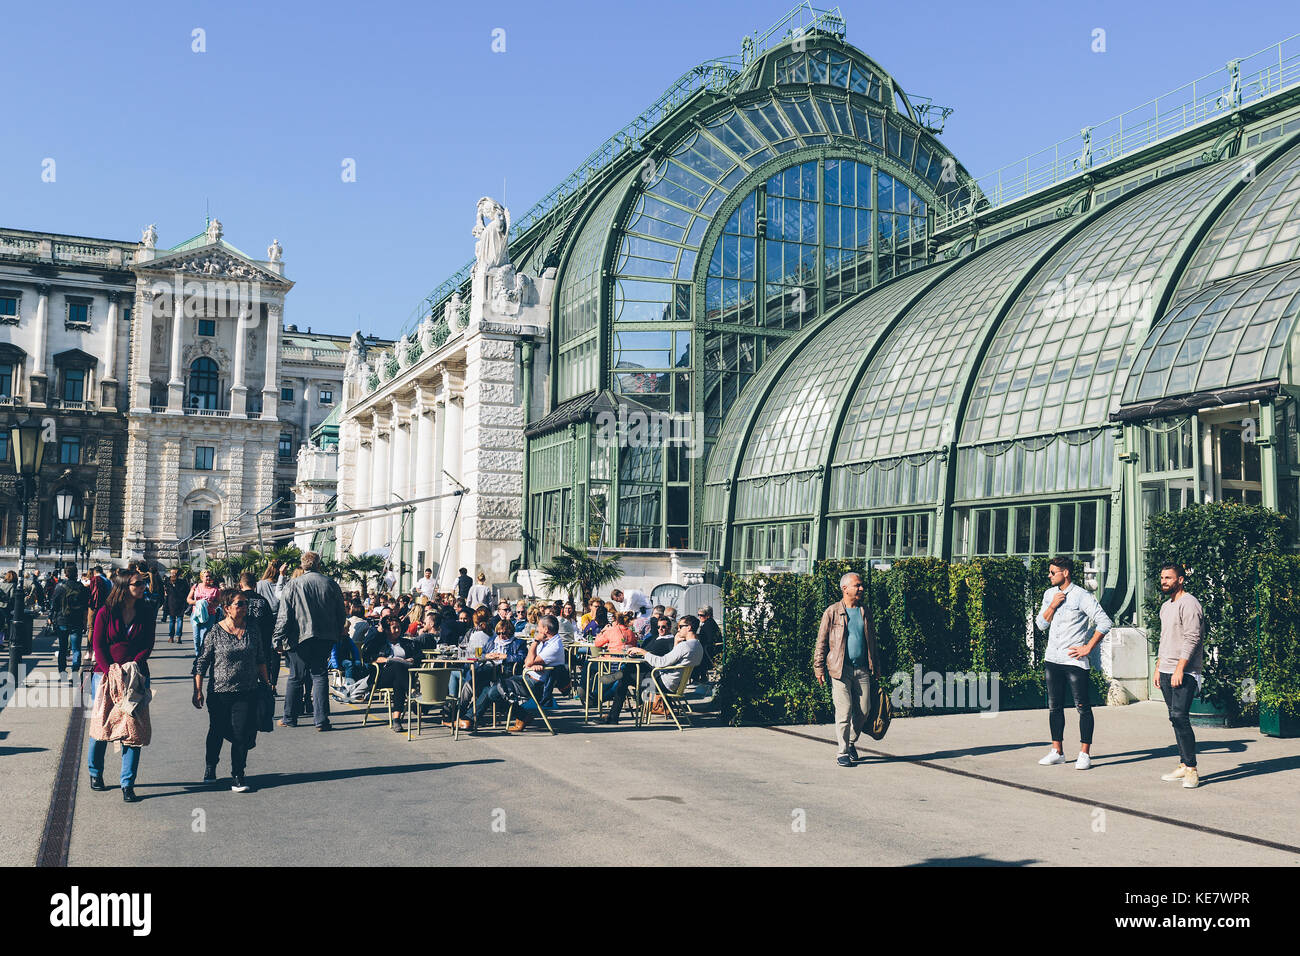 Vienne, Autriche - 30 septembre 2017 : le populaire restaurant palmenhaus burggarten, donnant sur le parc au centre-ville de Vienne. Banque D'Images